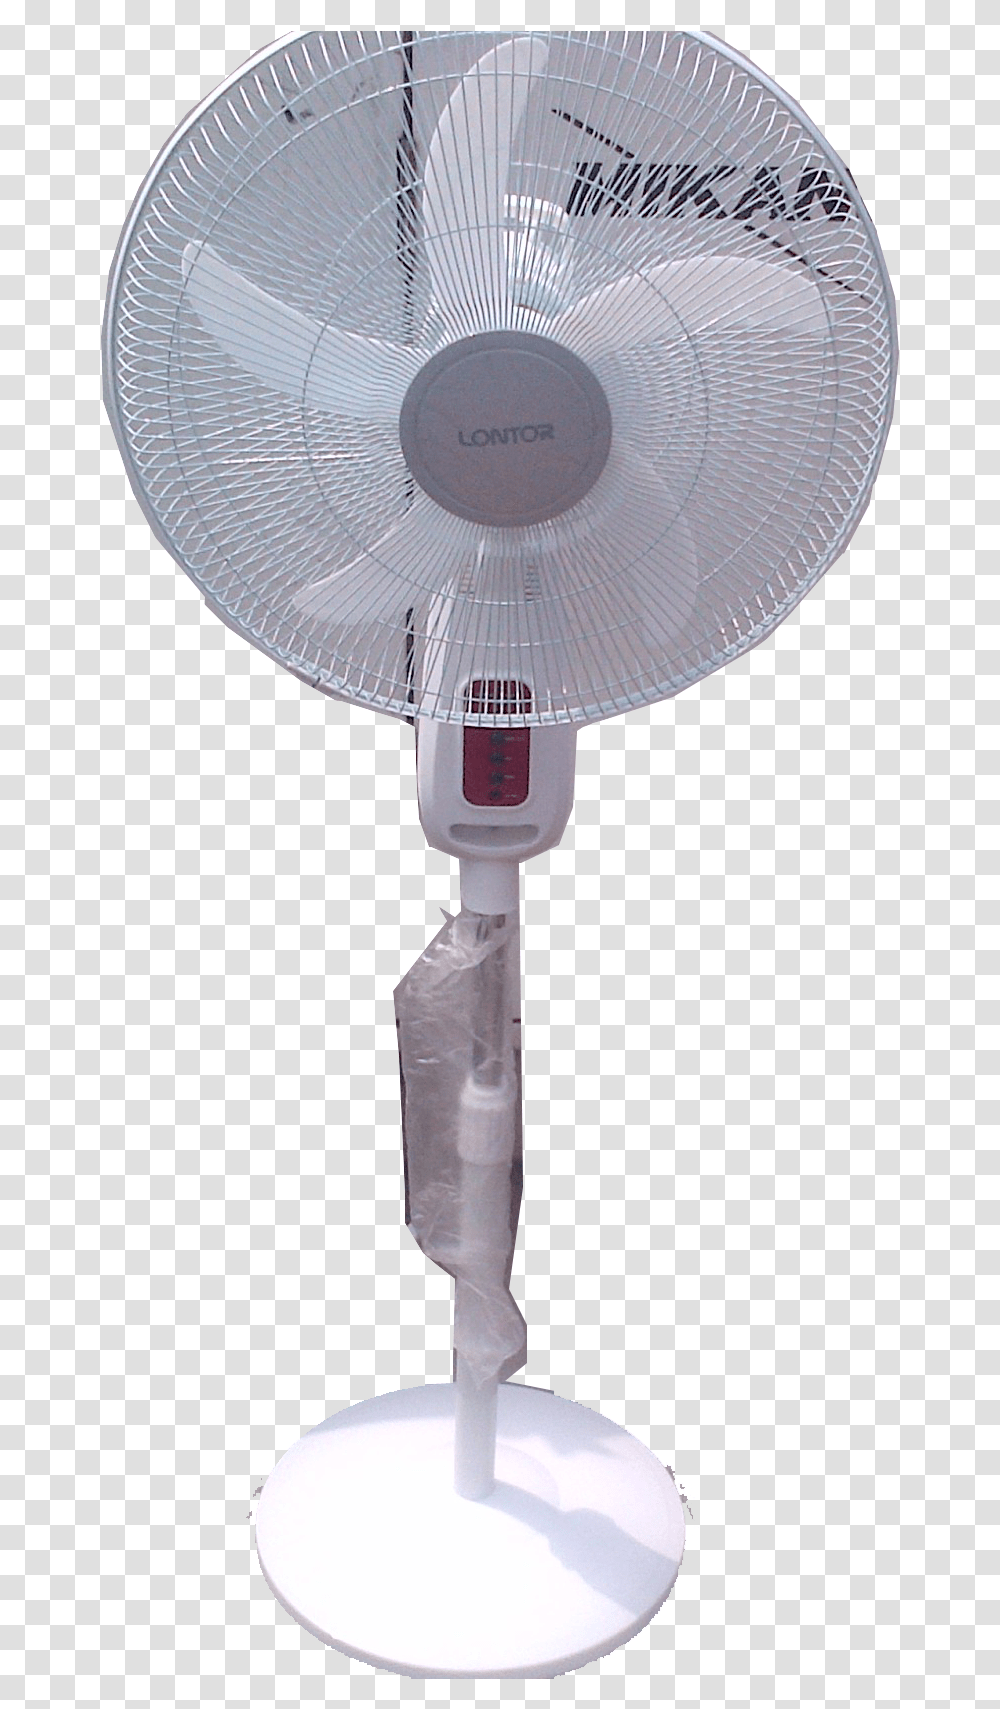 Lontor Rechargeable Standing Fan Mechanical Fan, Lamp, Electric Fan Transparent Png